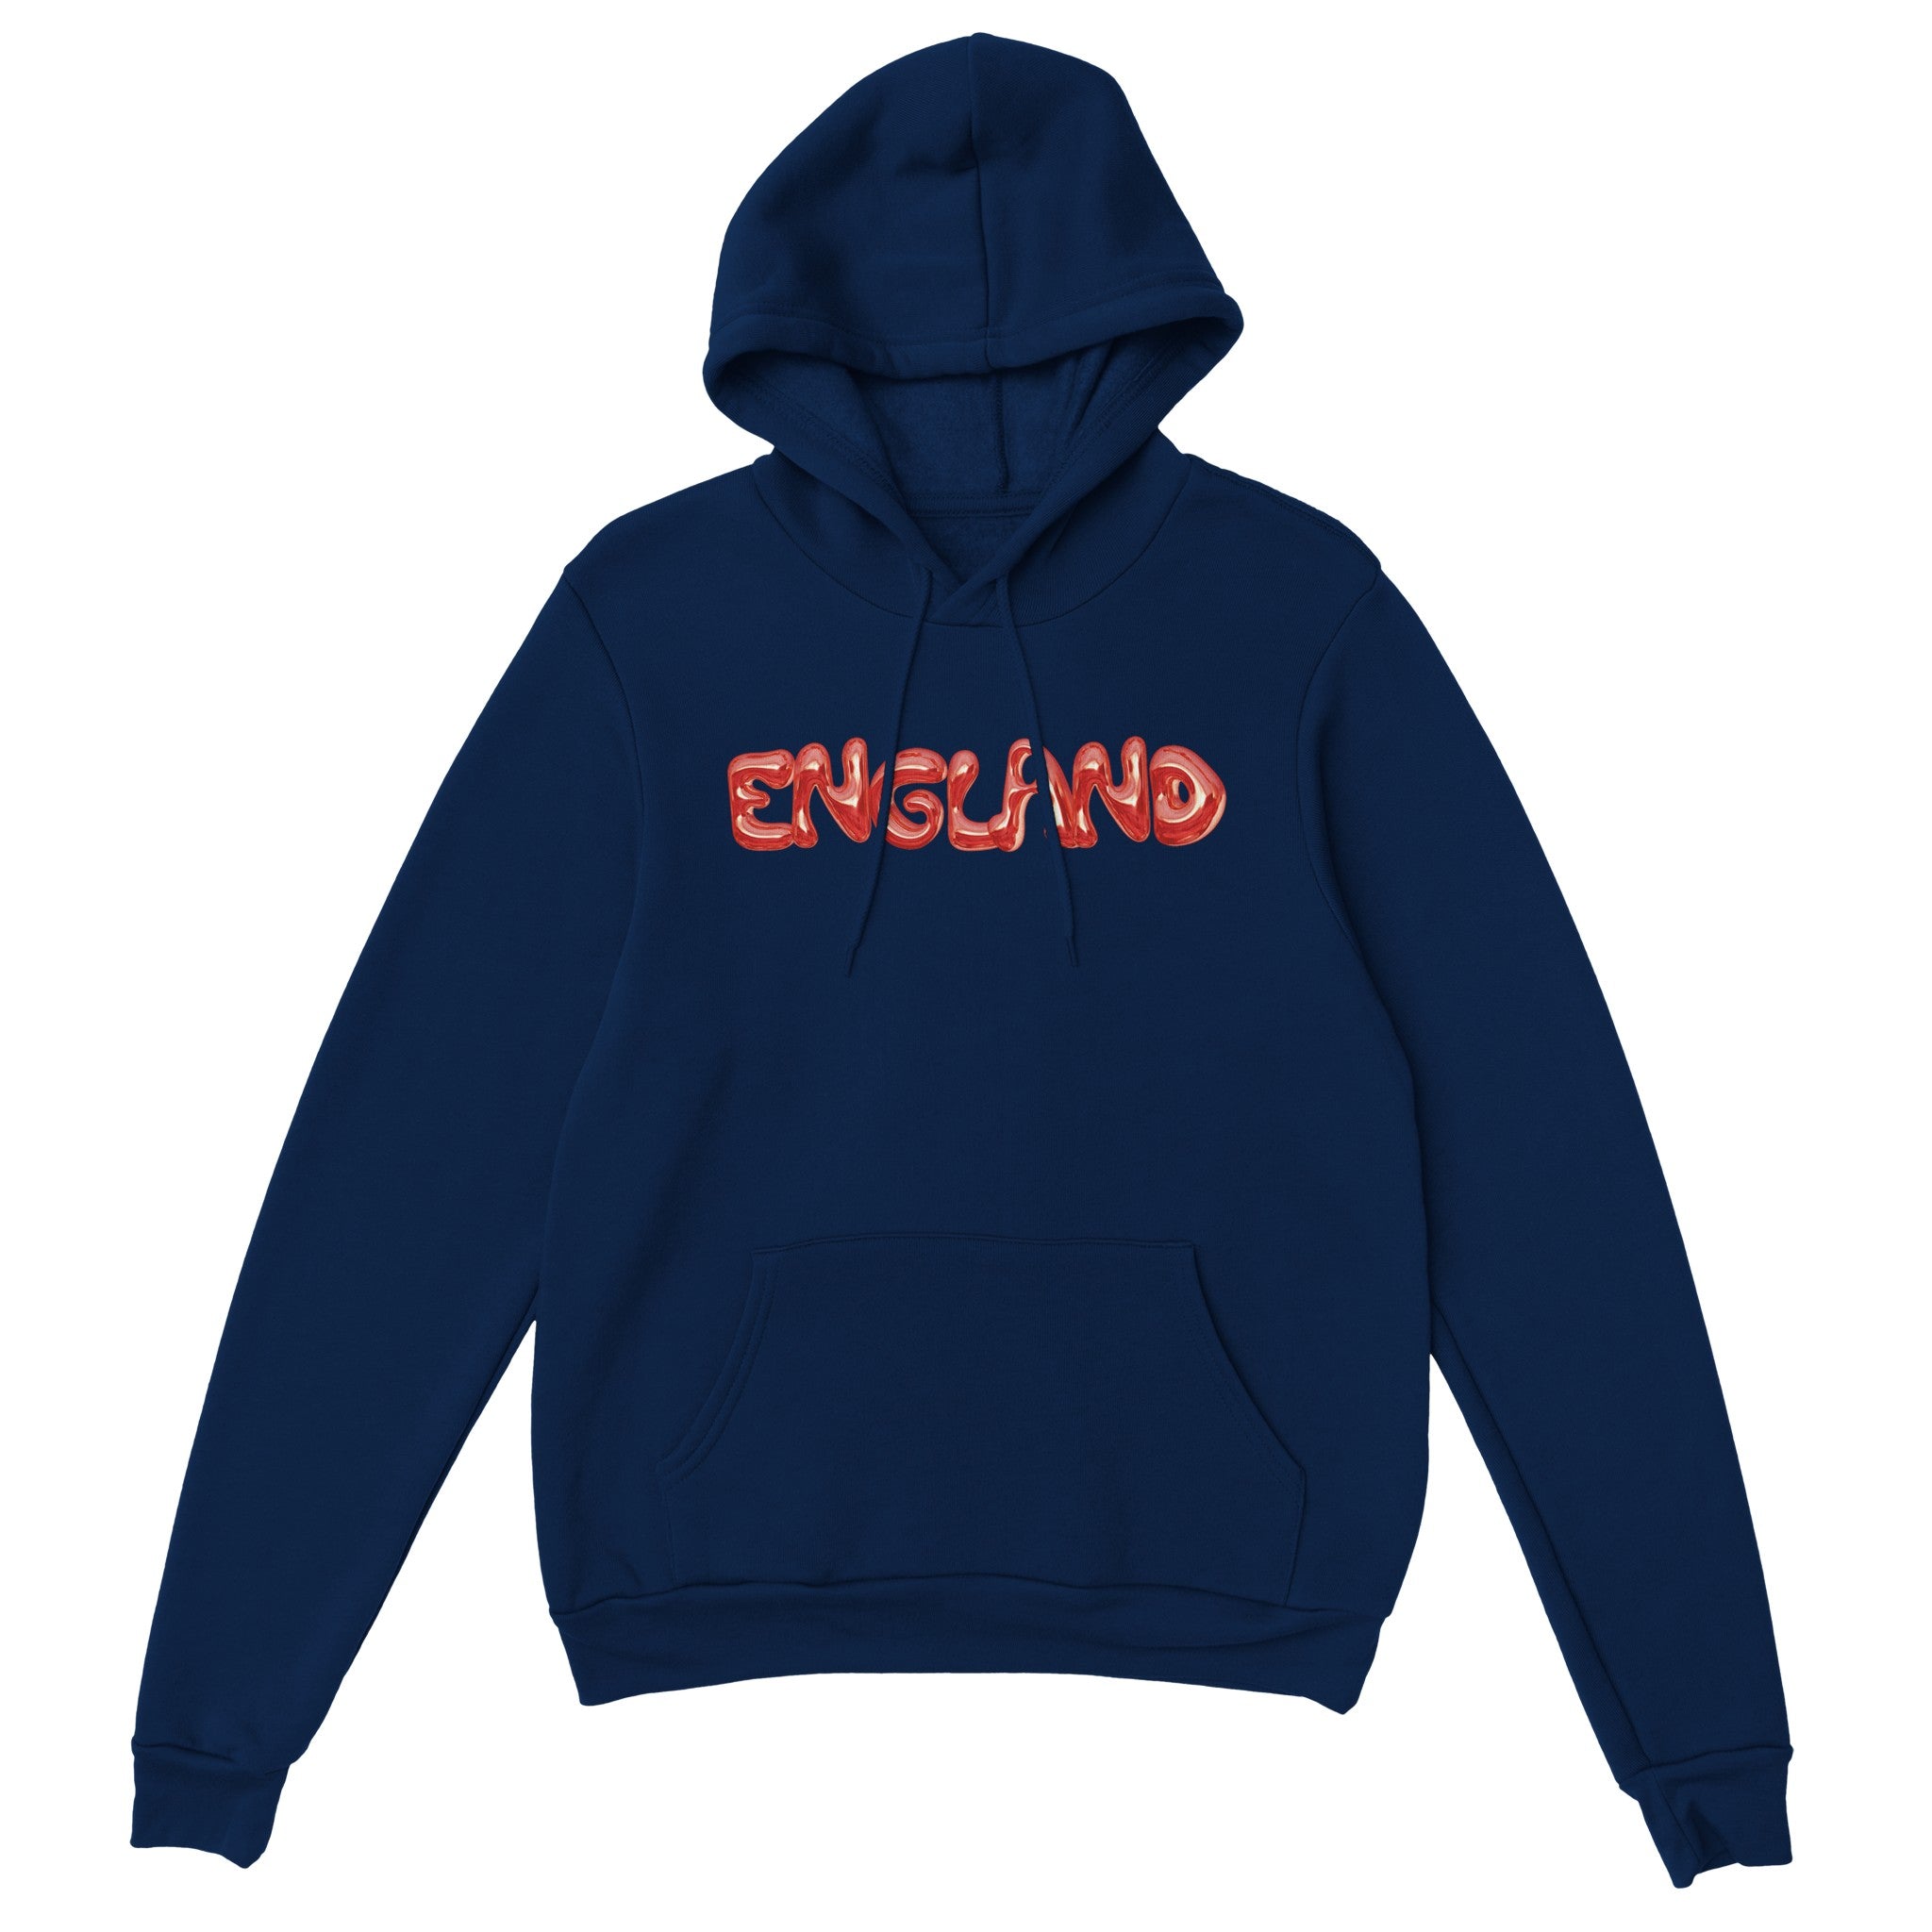 'England' hoodie - In Print We Trust